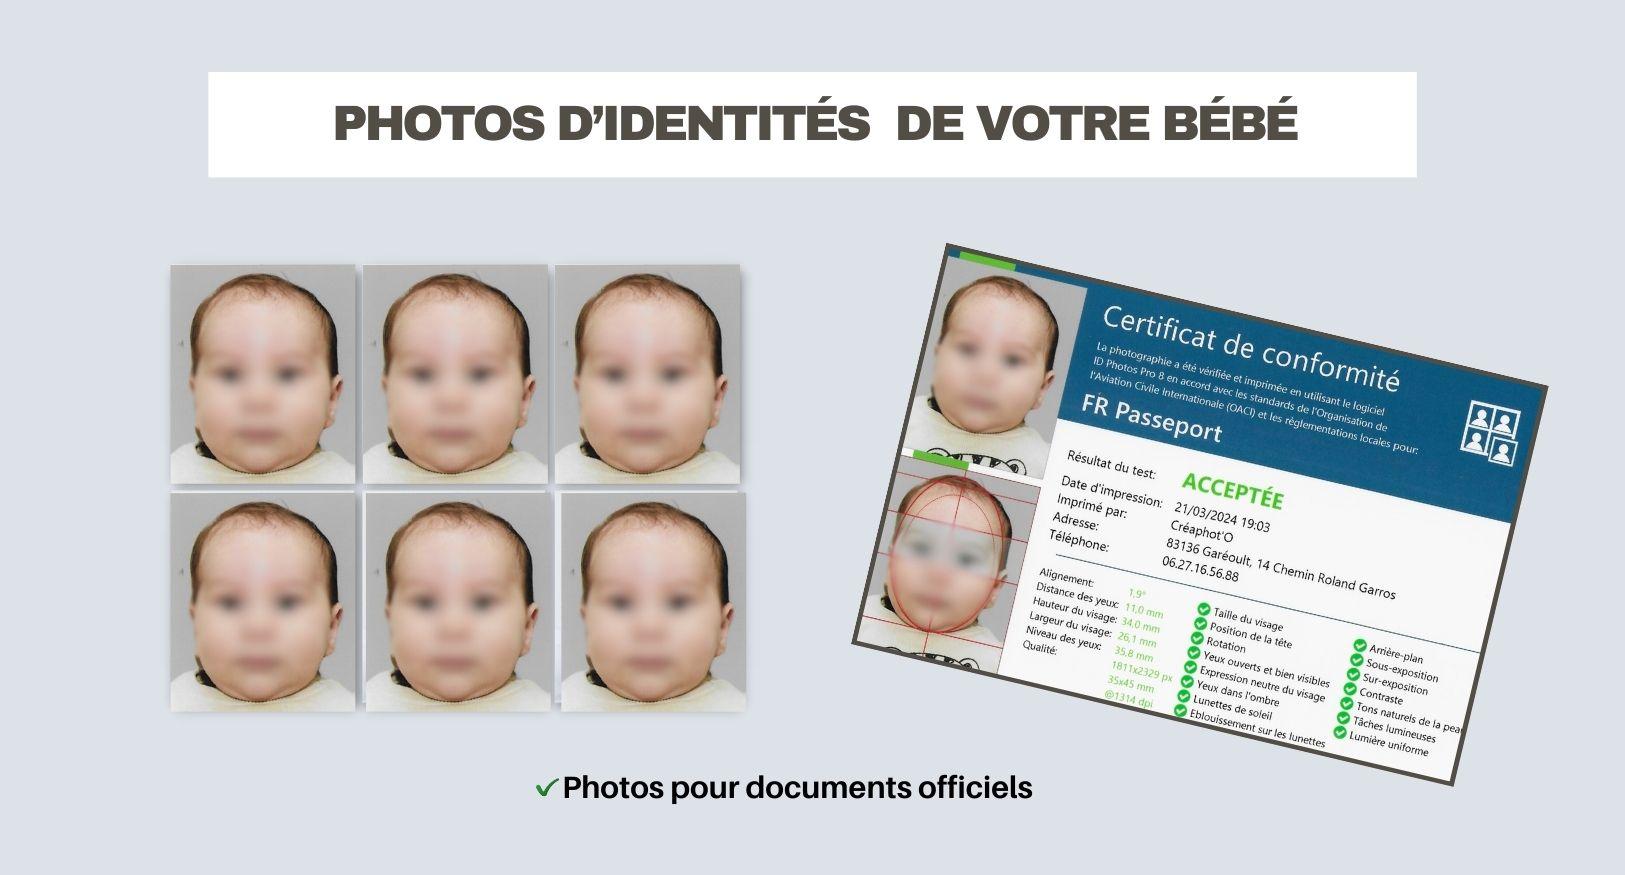 Photos d identite de bebe a gareoult